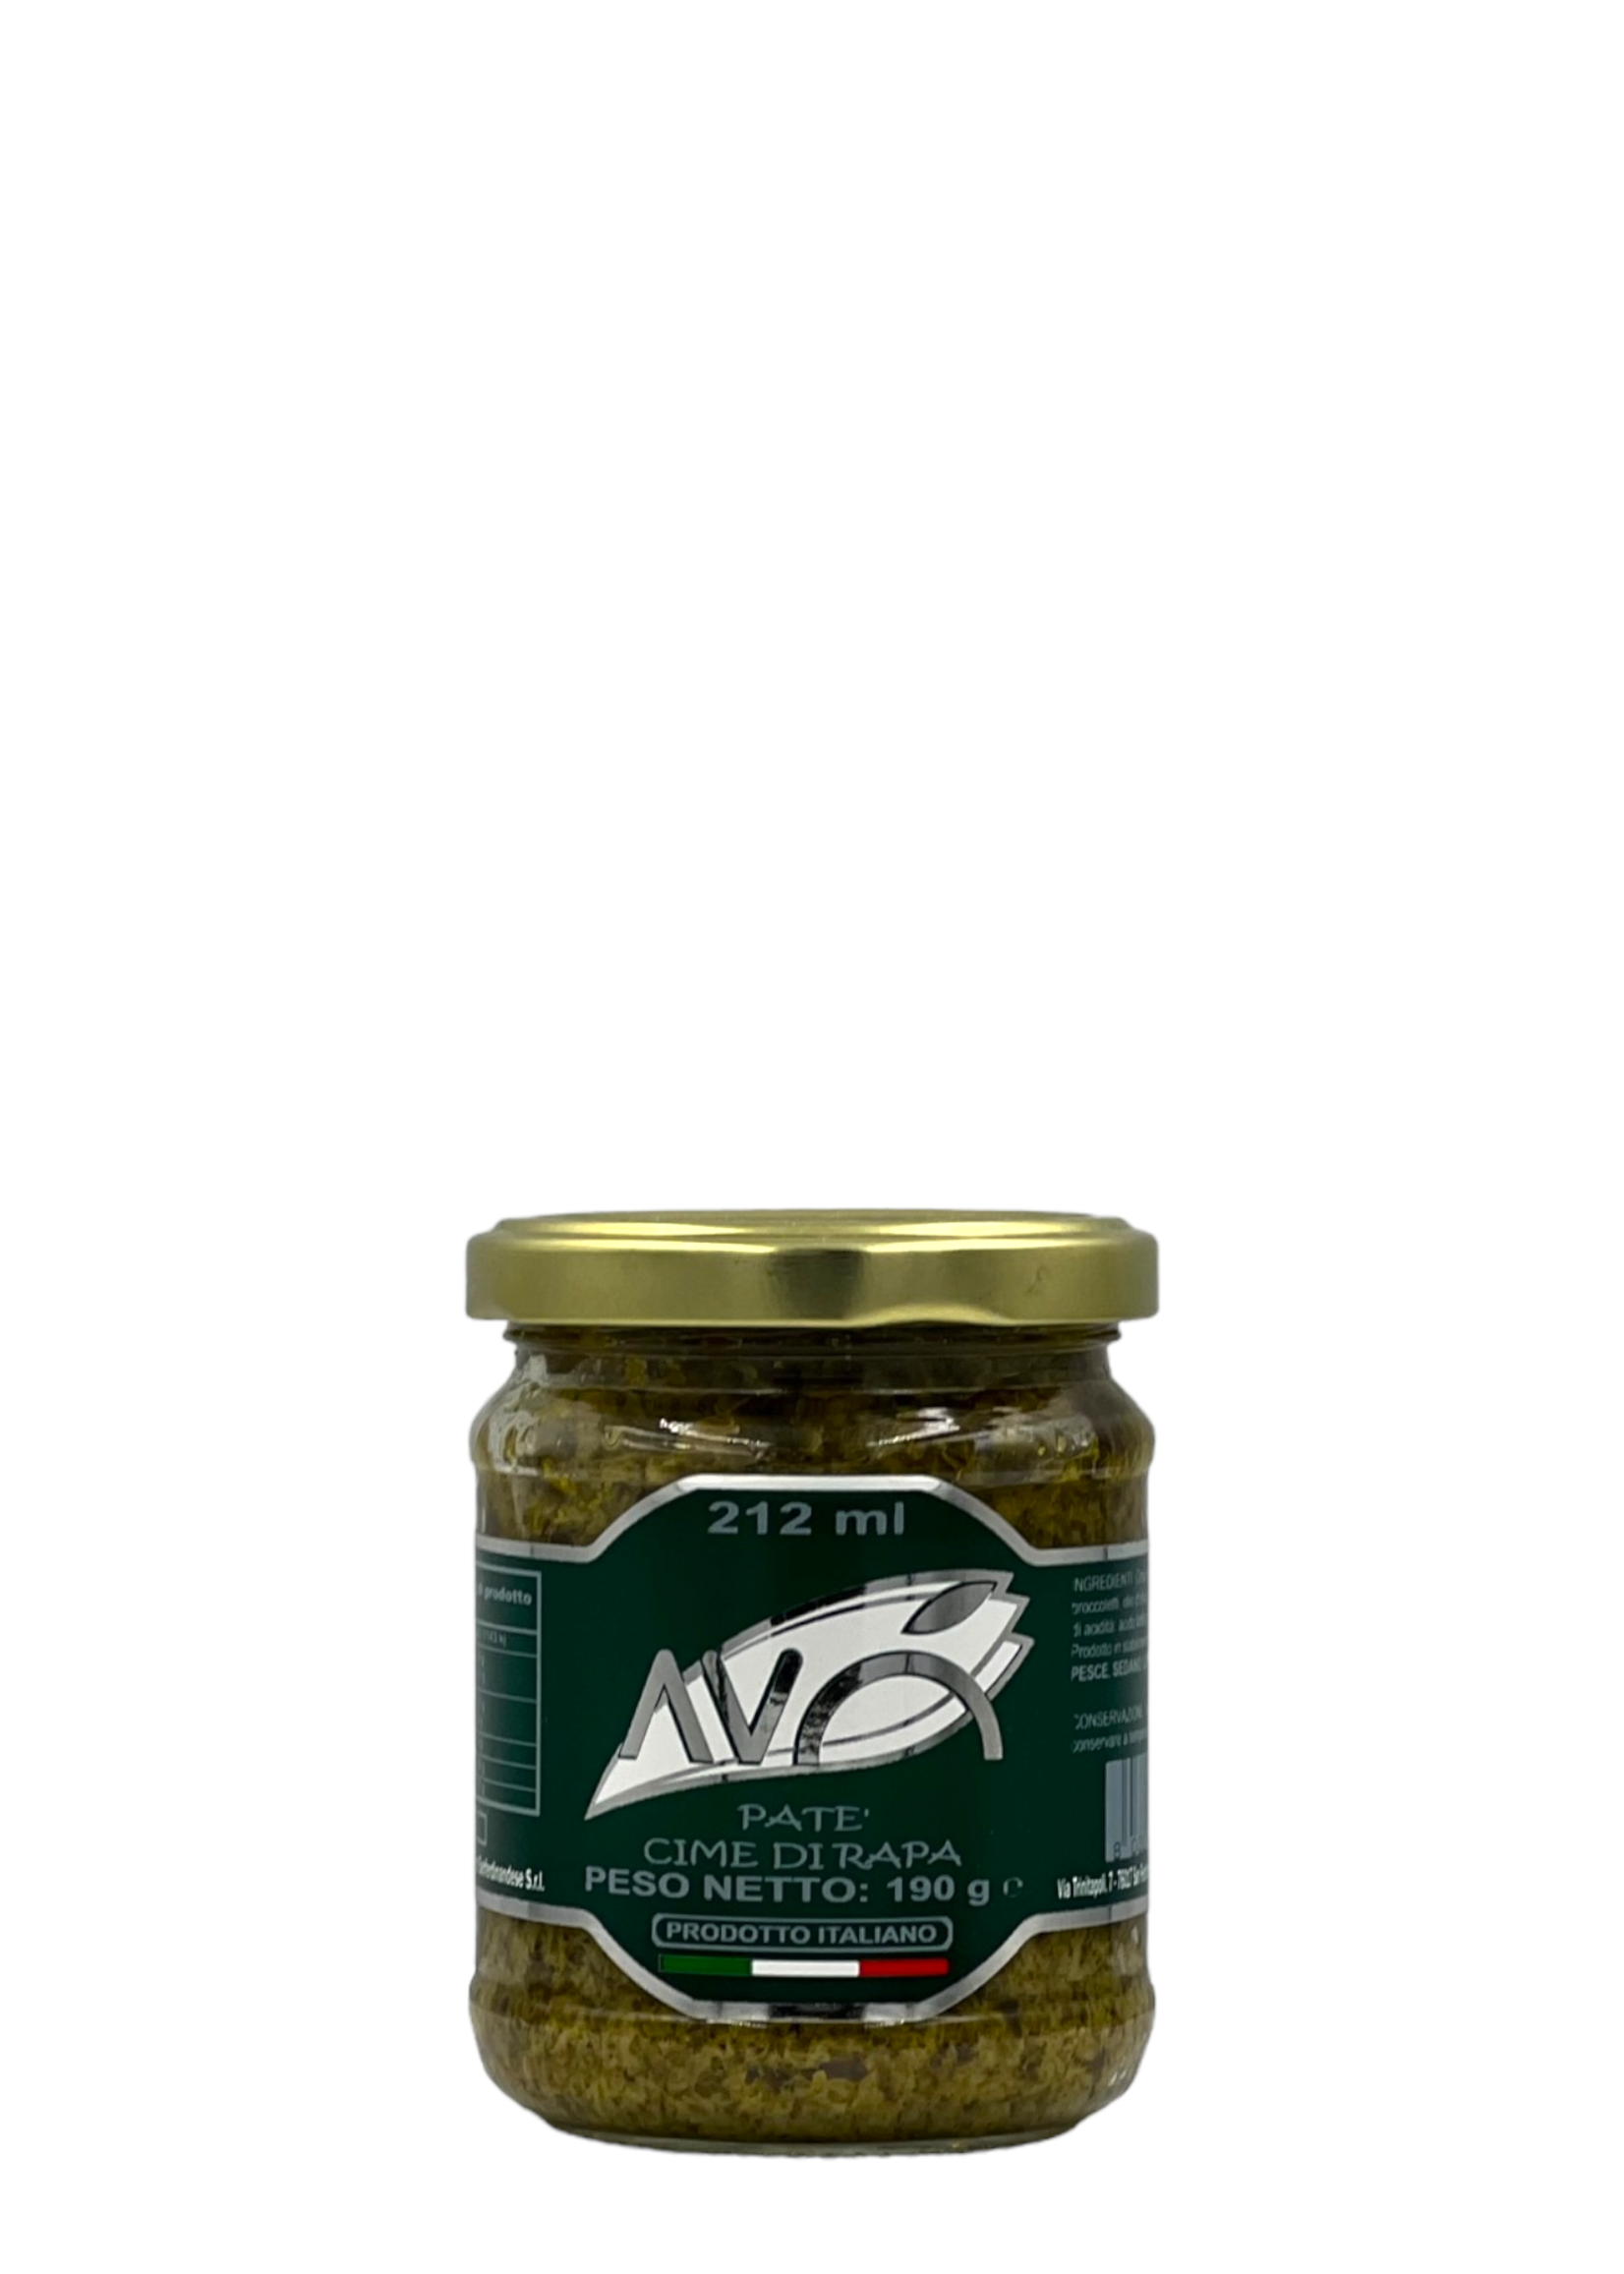 Patè di cime di rapa in olio d’oliva vaso 212ml - AVÒ